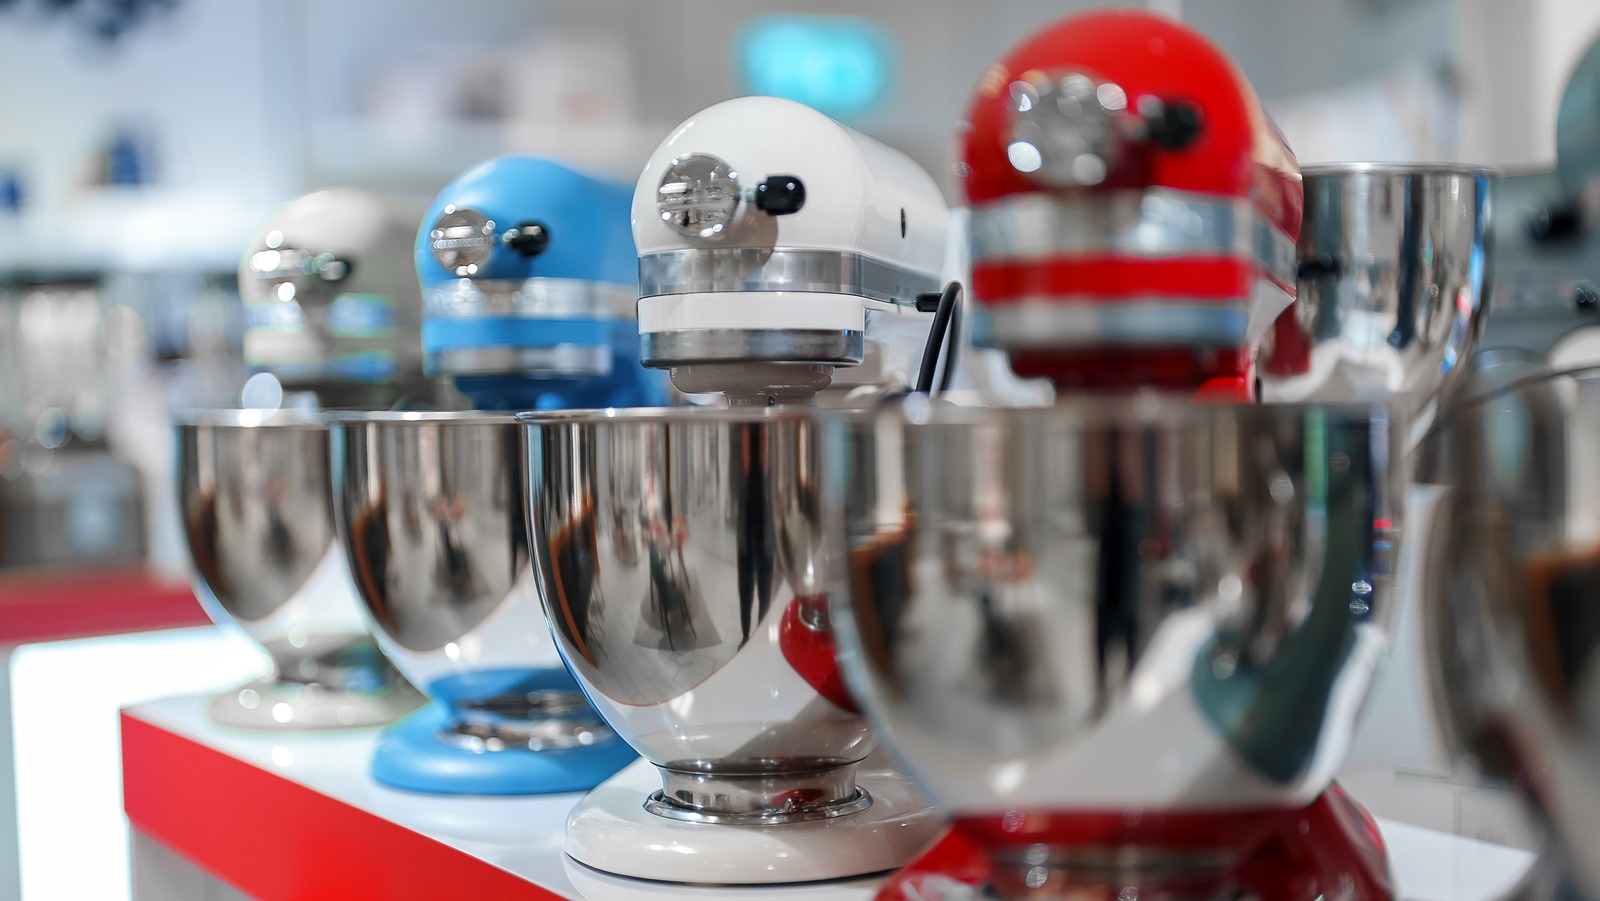 KitchenAid 5.5 Quart Bowl-Lift Stand Mixer - Empire Red